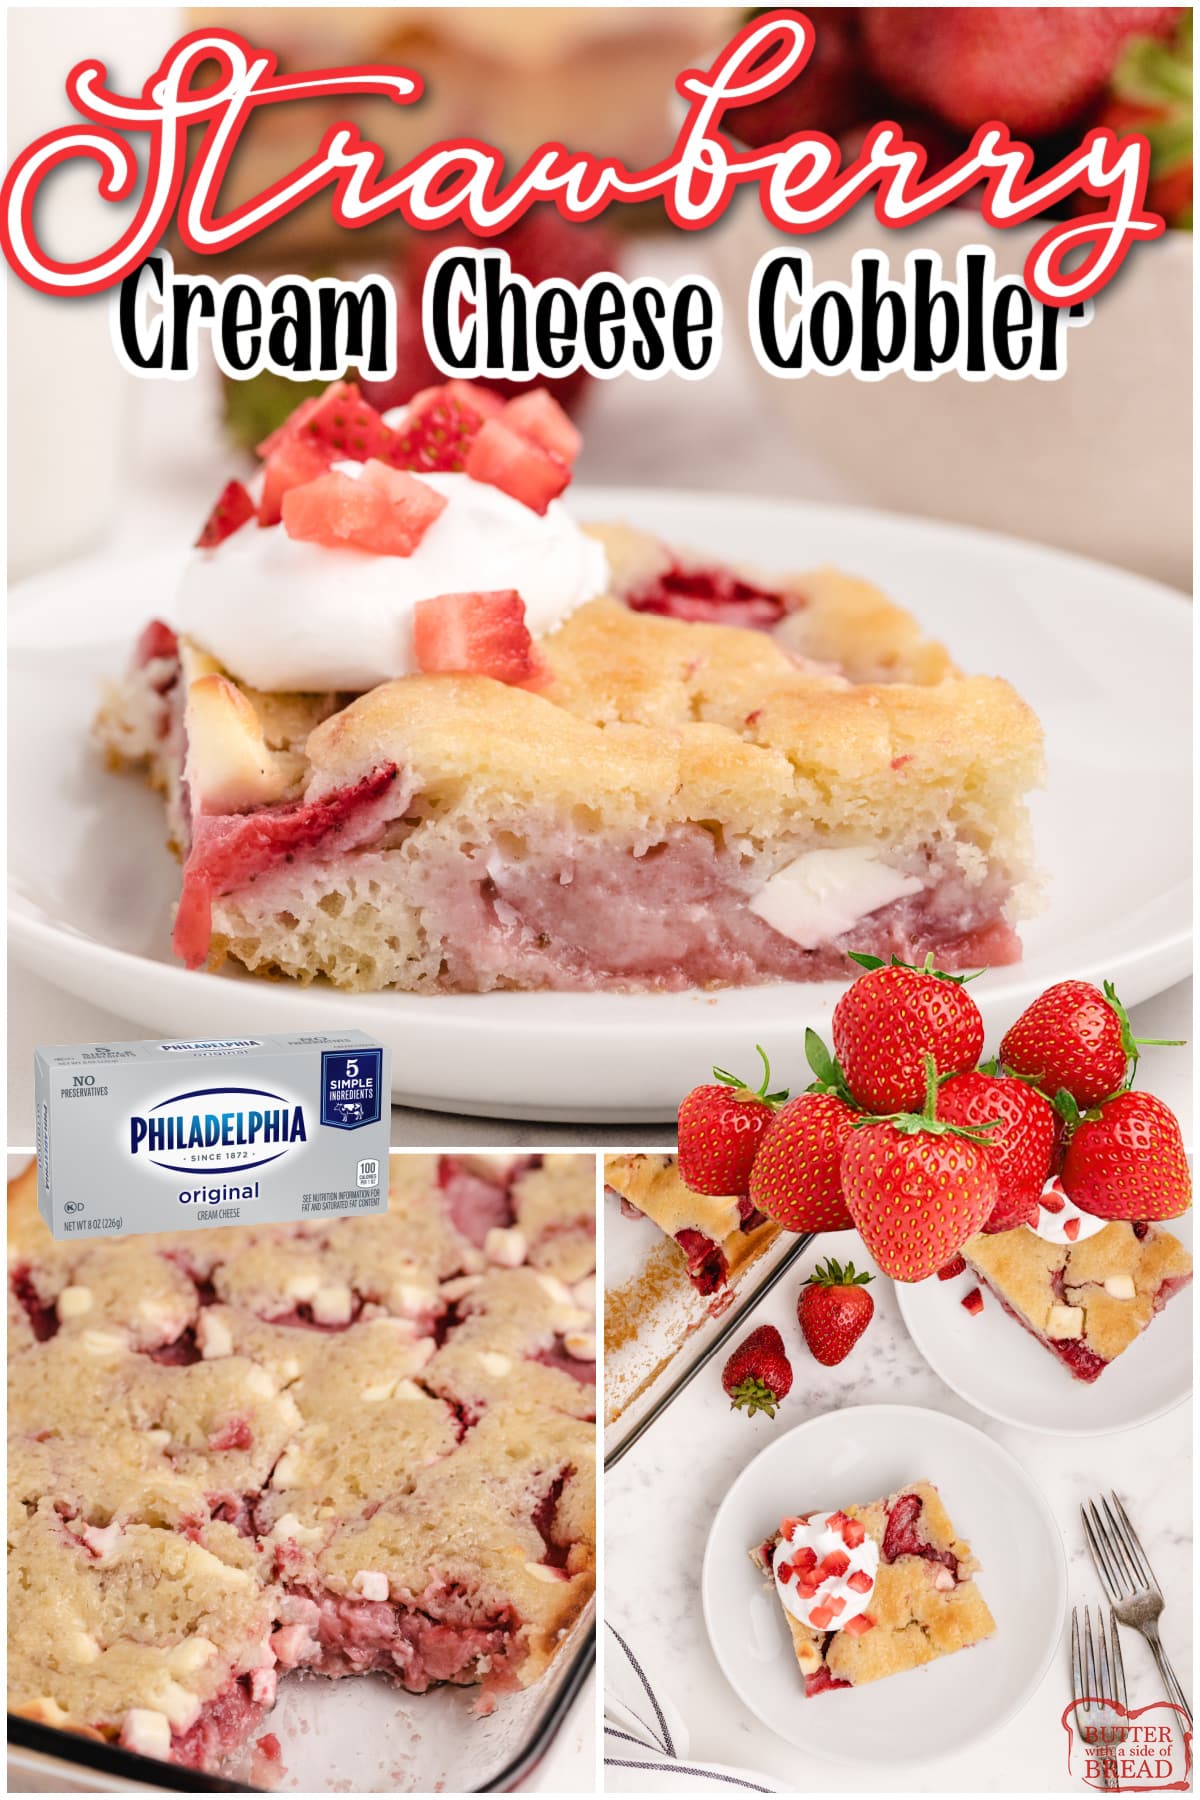 Strawberry Cream Cheese Cobbler recipe